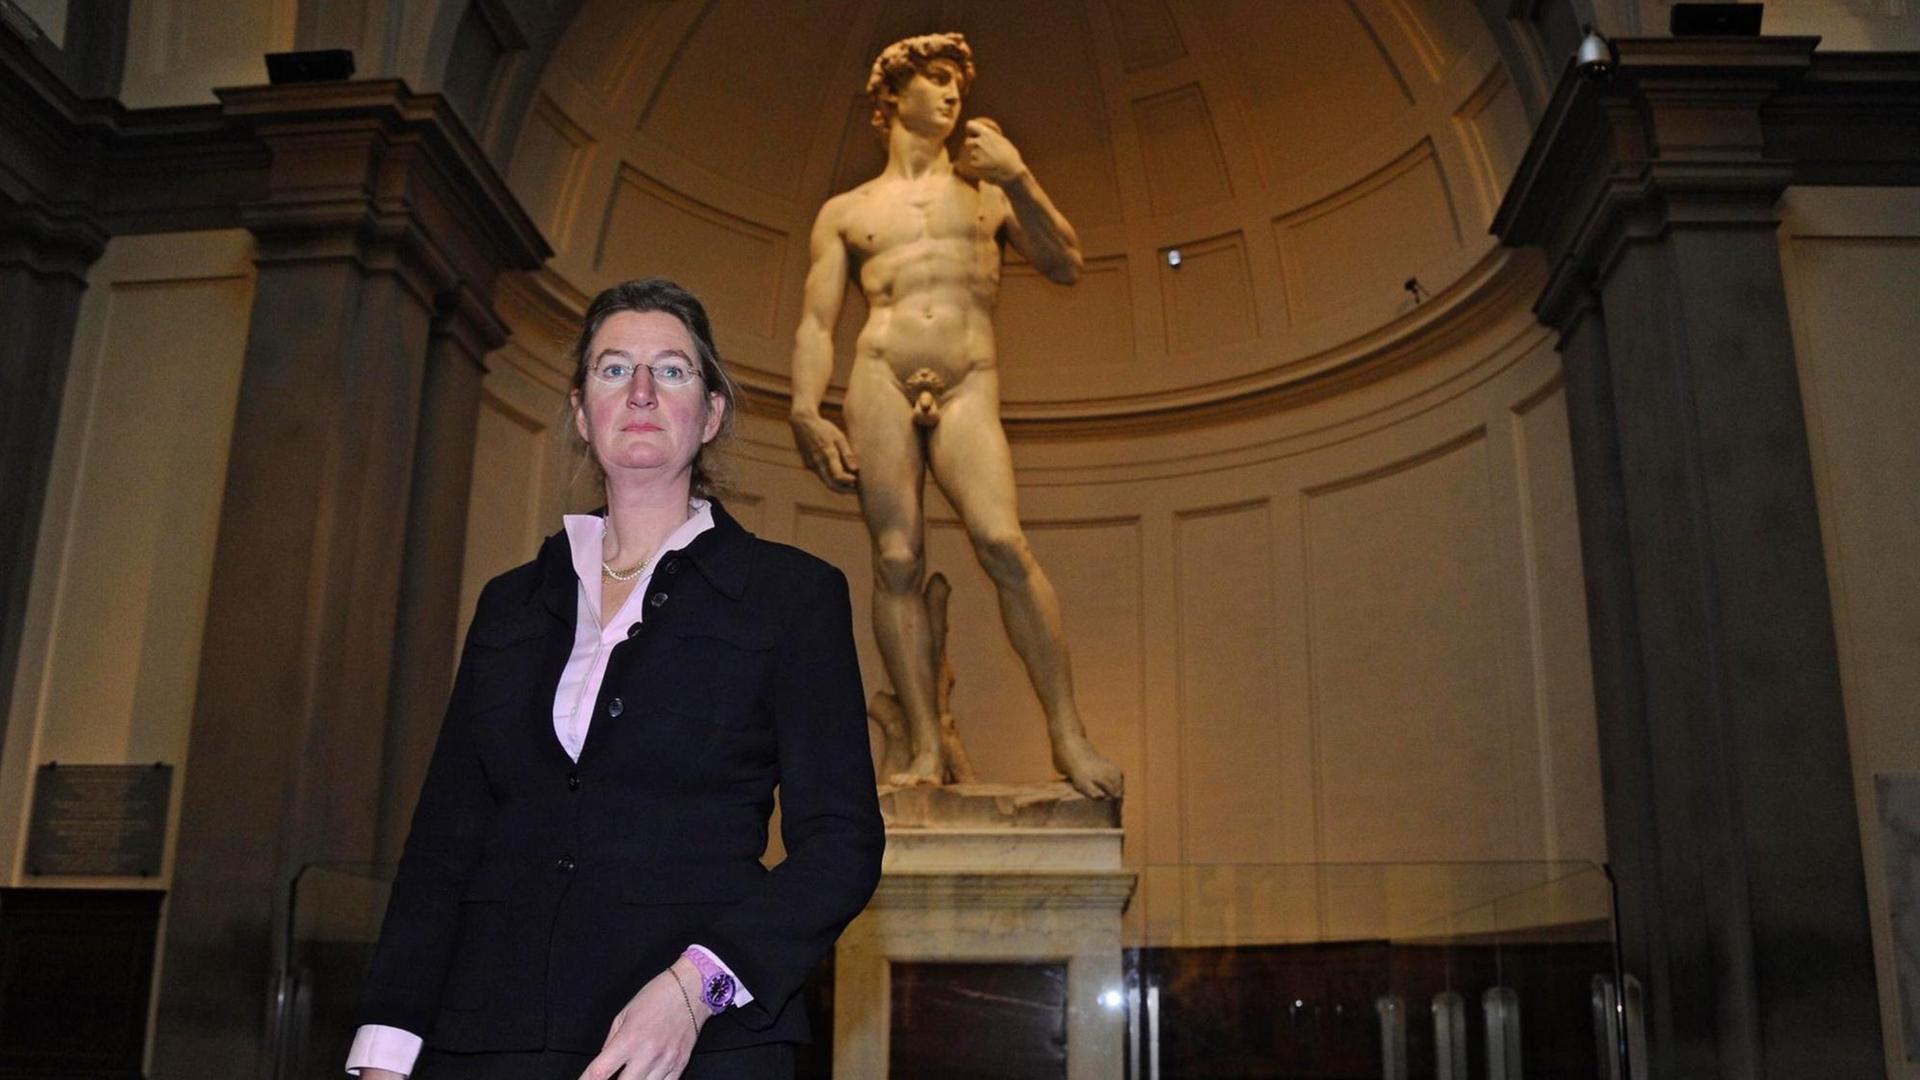 Cecilie Hollberg, Direktorin der "Galleria dell’Accademia" in Florenz.